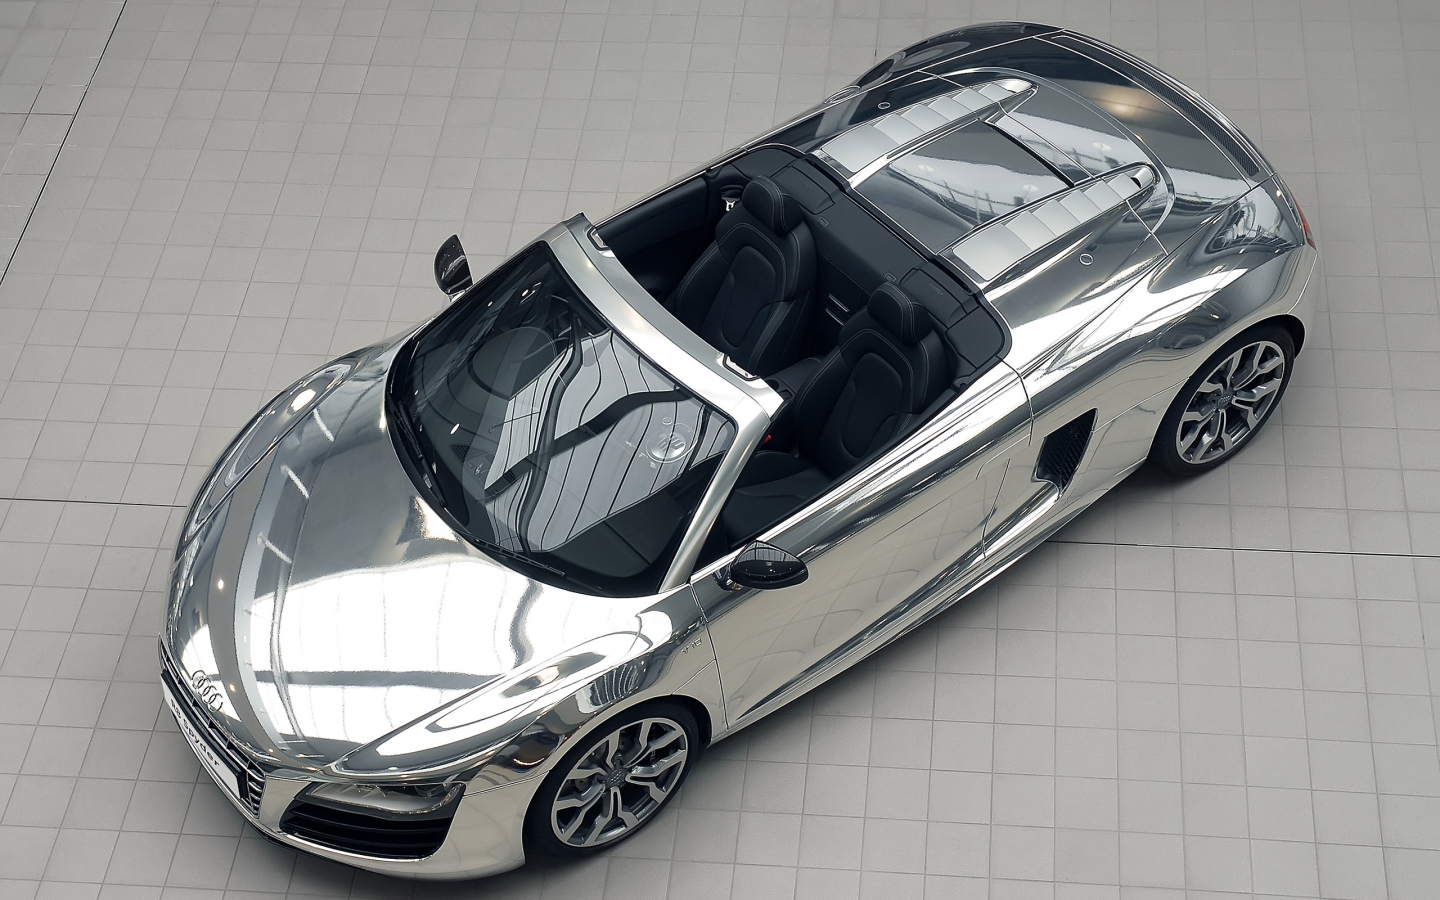 Audi R8 V10 Spyder Chrome for 1440 x 900 widescreen resolution